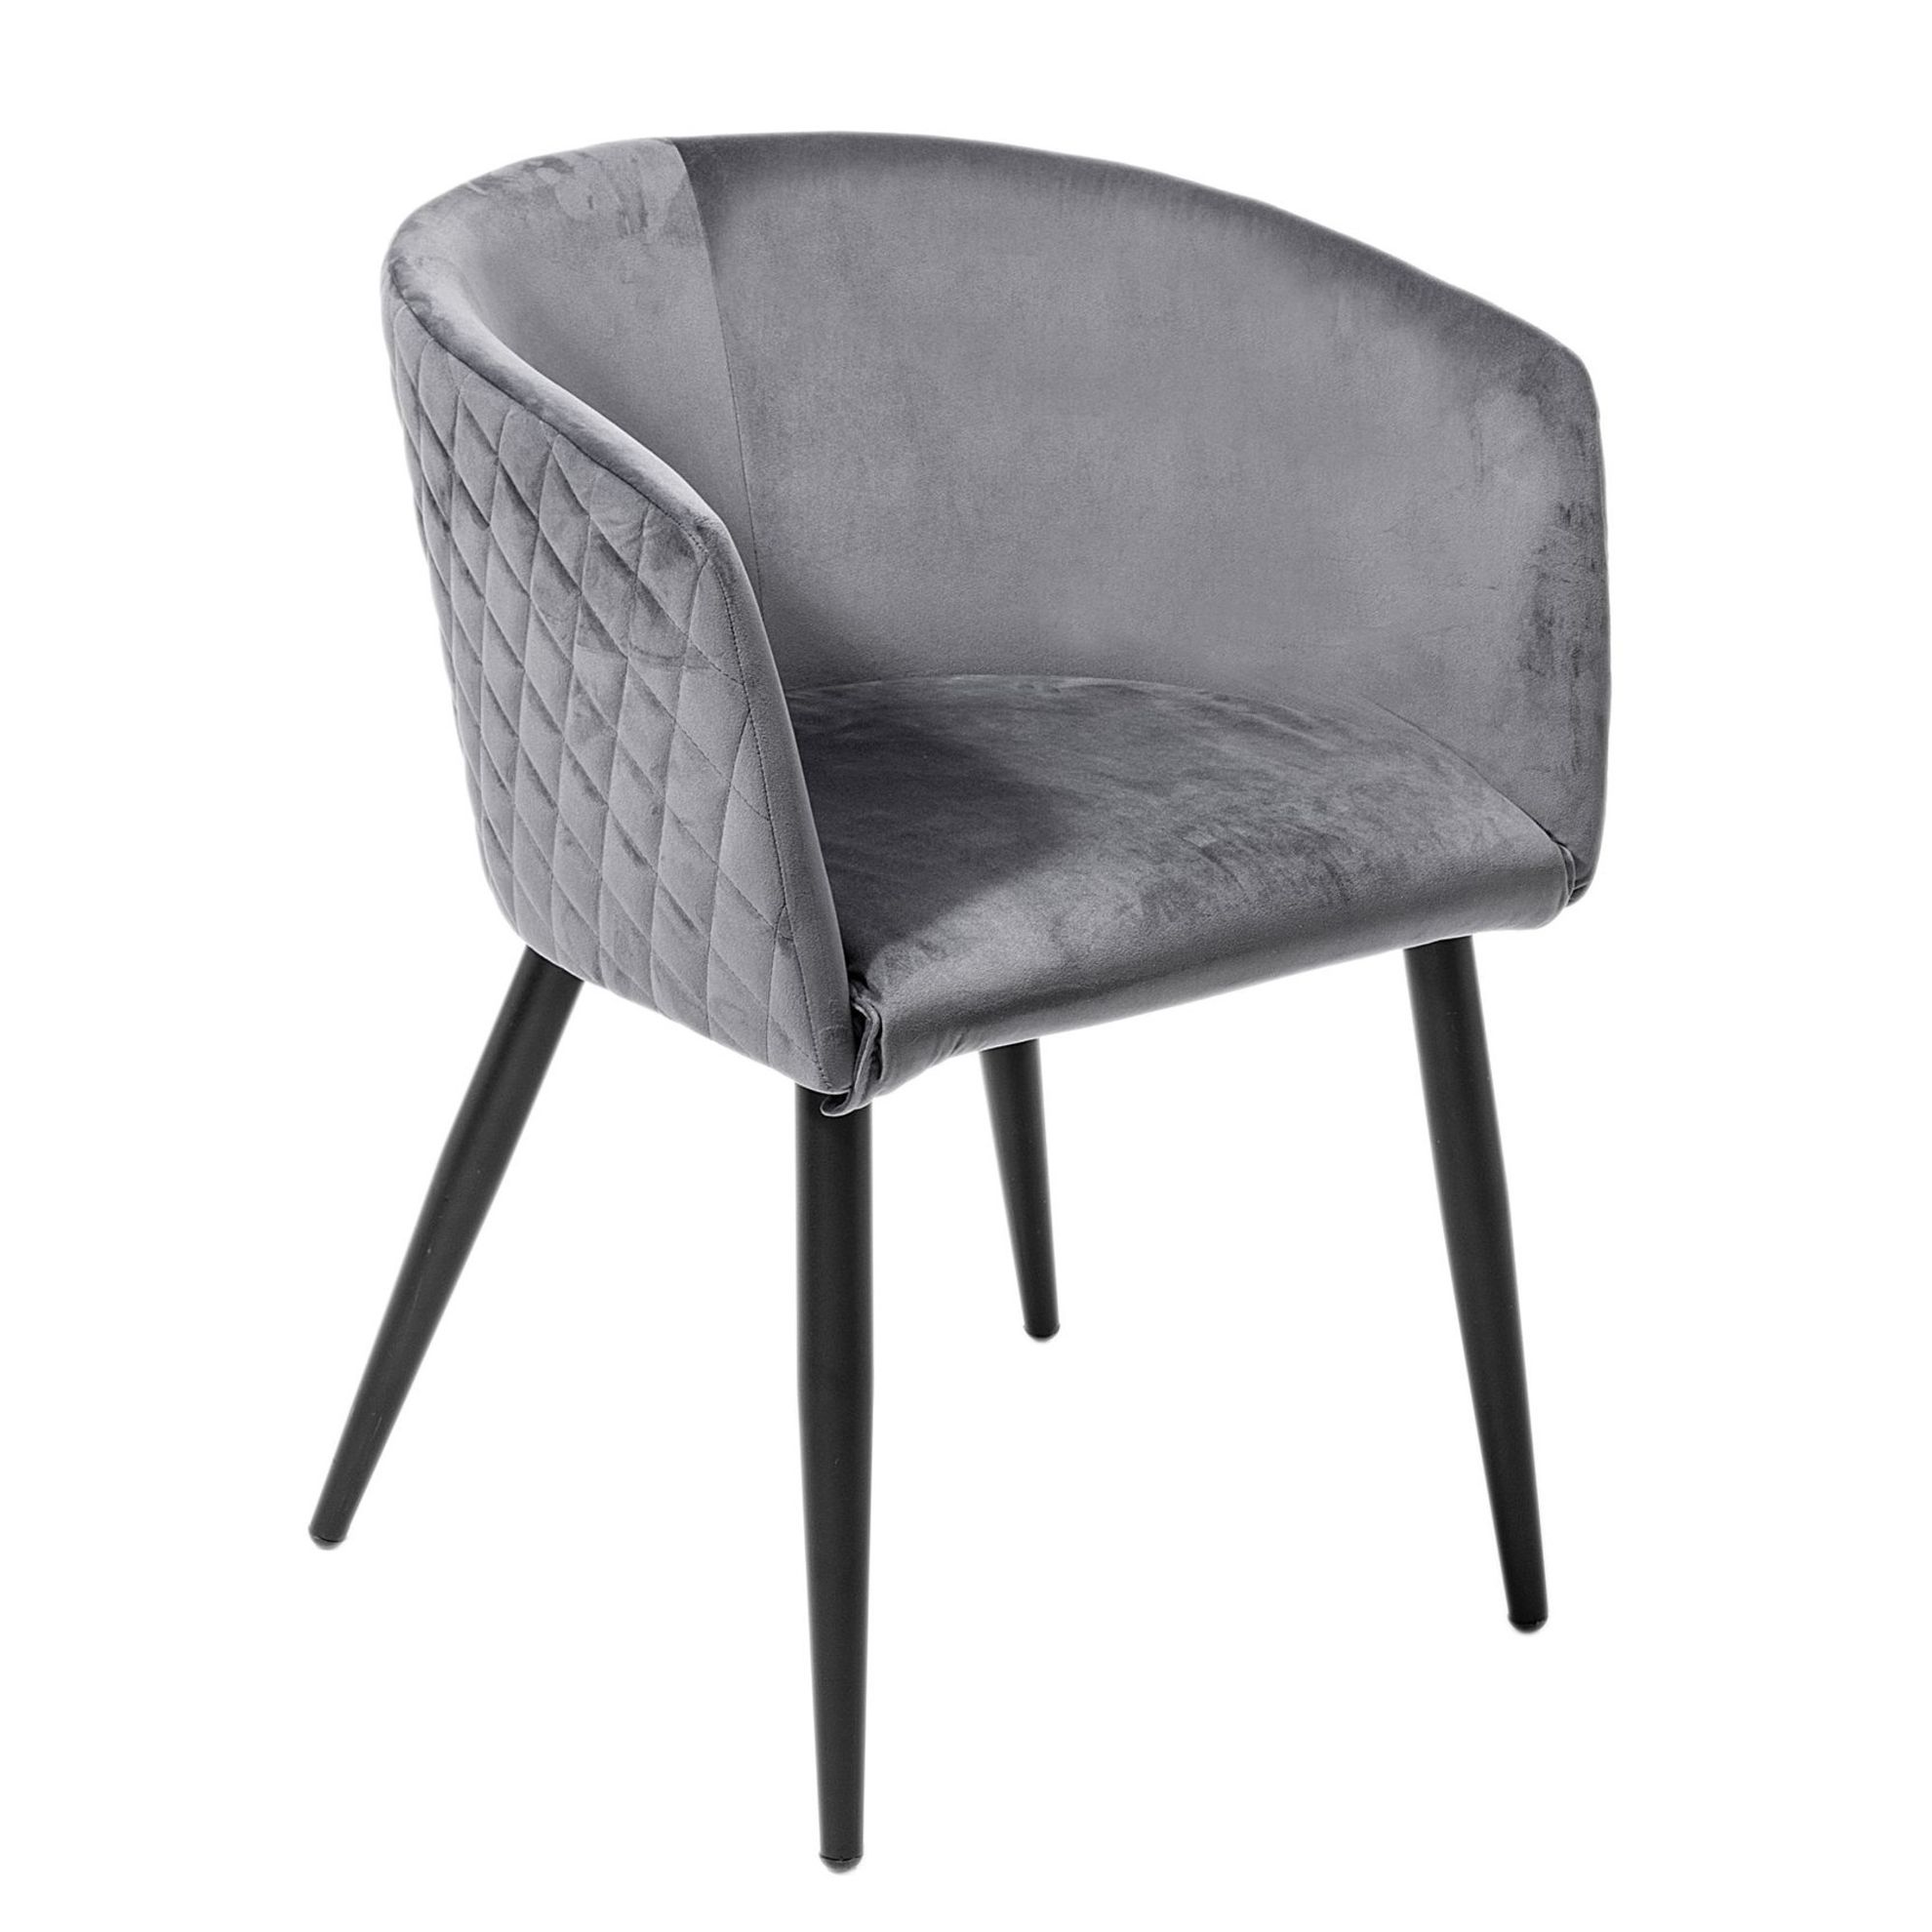 Stuhl mit Armlehne Farbe: Grau jetzt bei Weltbild.de bestellen